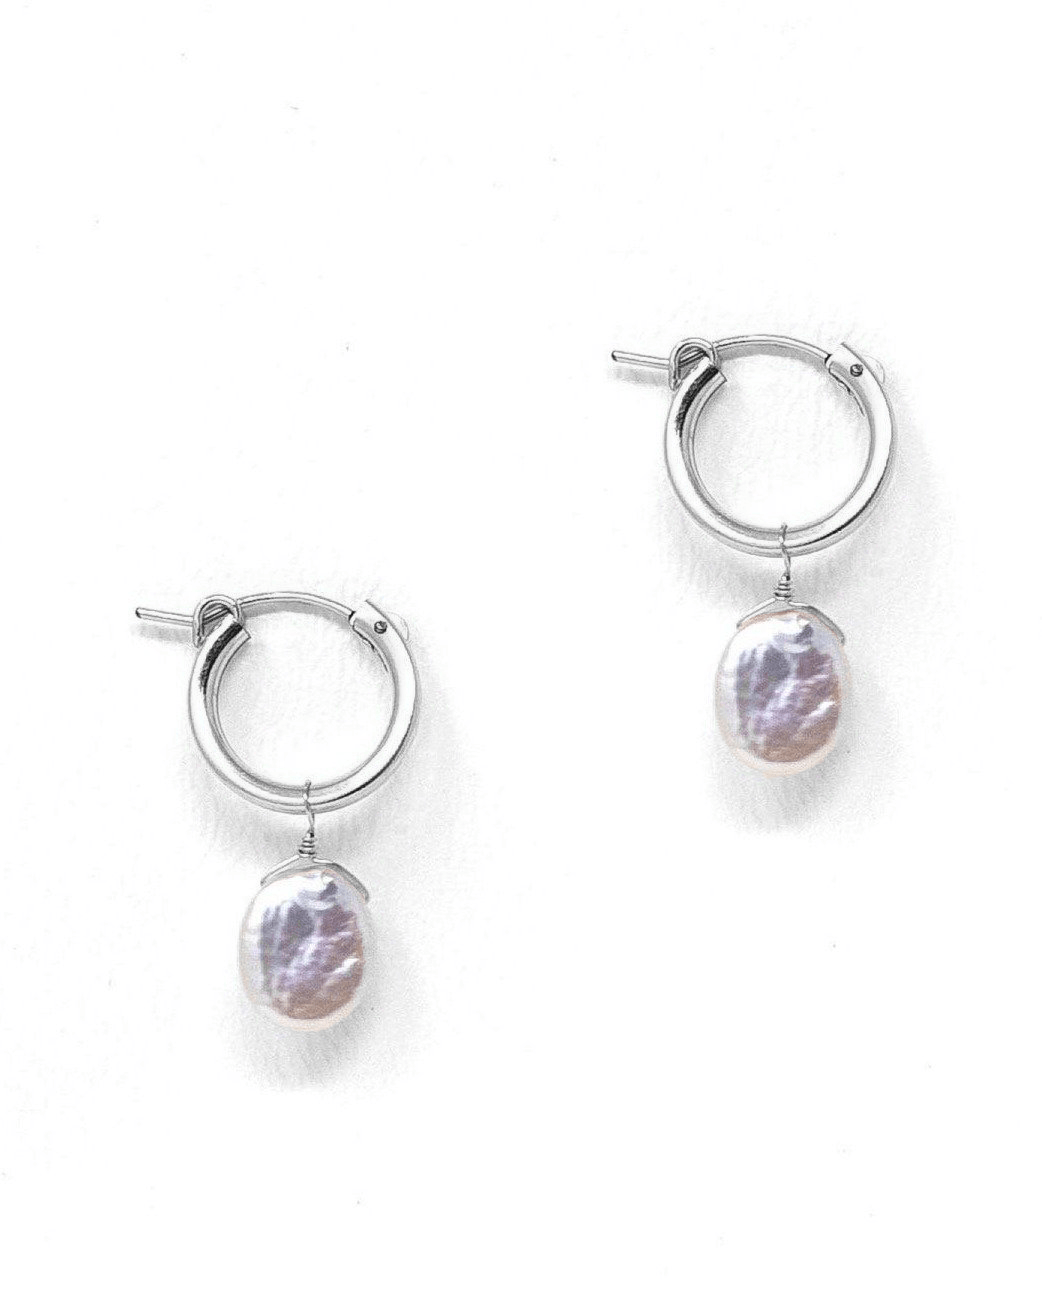 Nancy Hoop Earrings by KOZAKH. 15mm snap closure hoop earrings in Sterling Silver, featuring a 13mm flat oval Pearl.